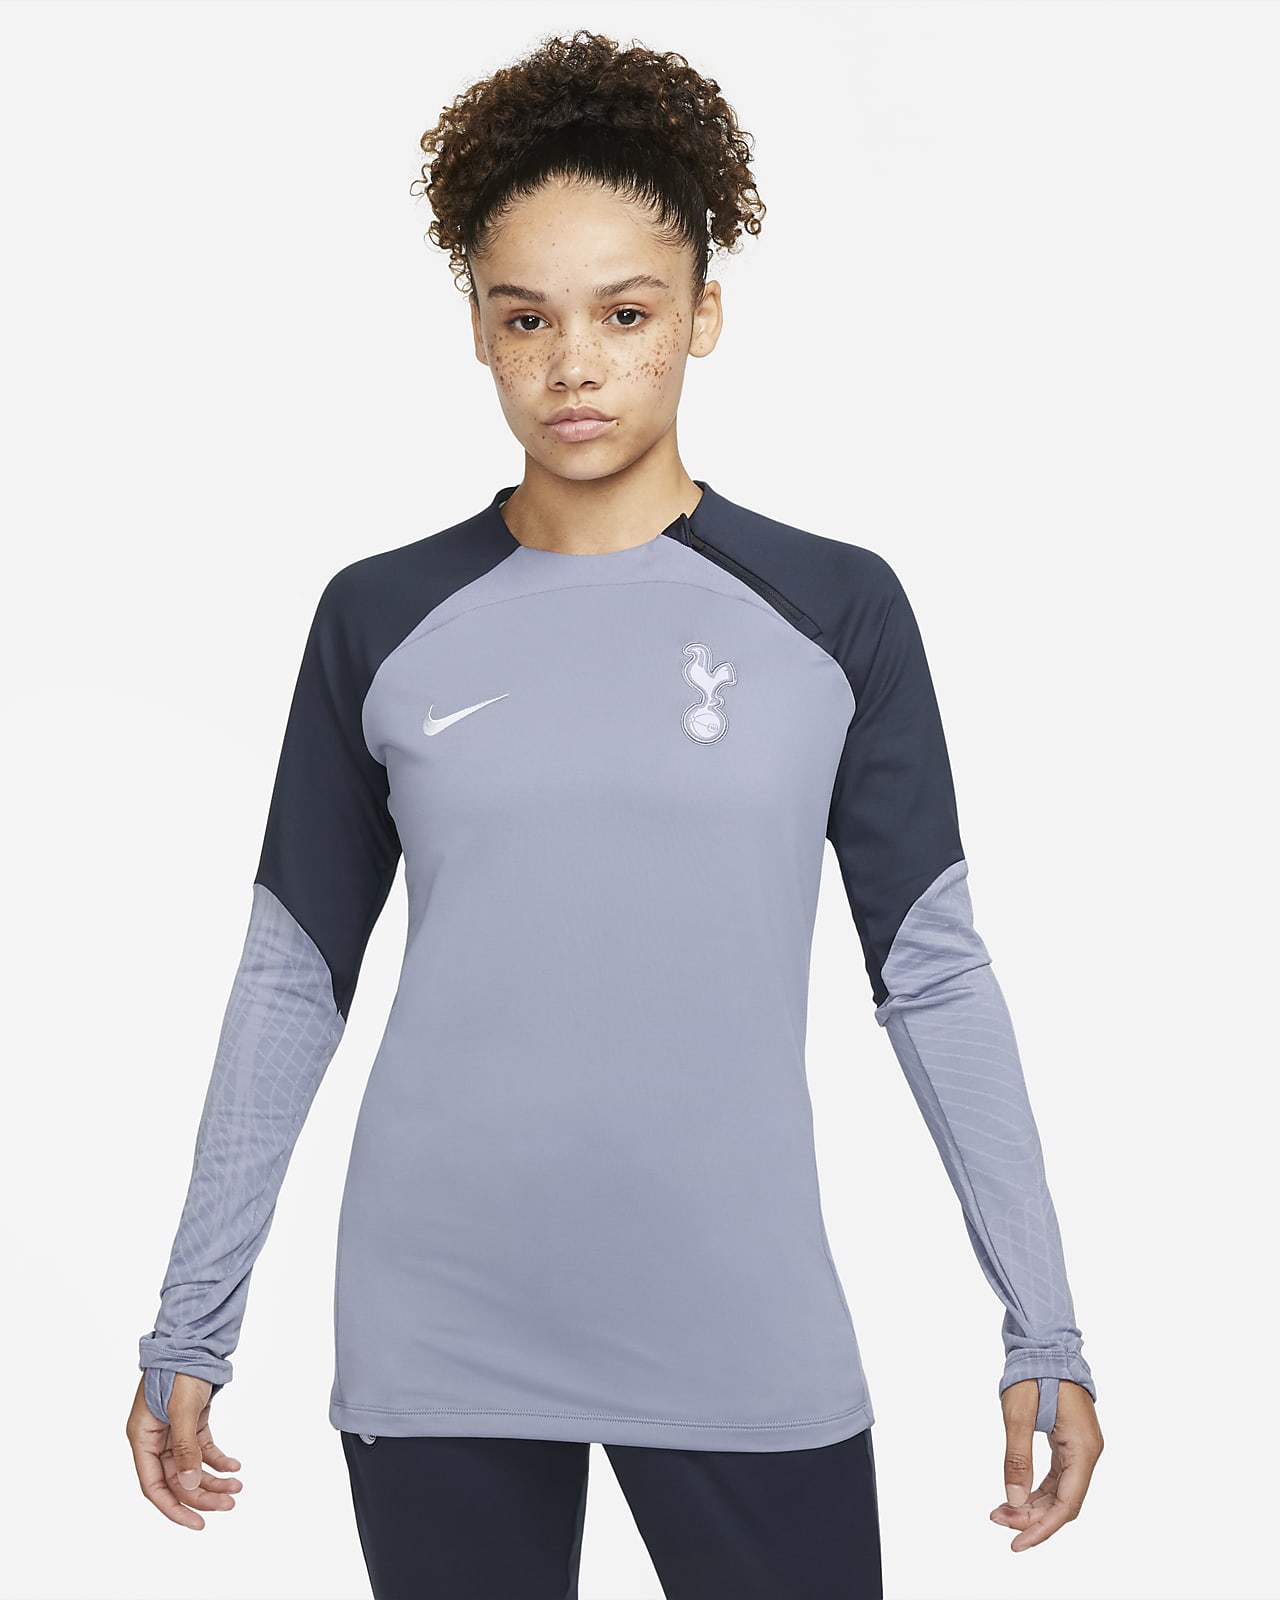 Tottenham Hotspur Strike Nike Dri-FIT fotballtreningsoverdel med rund hals til dame